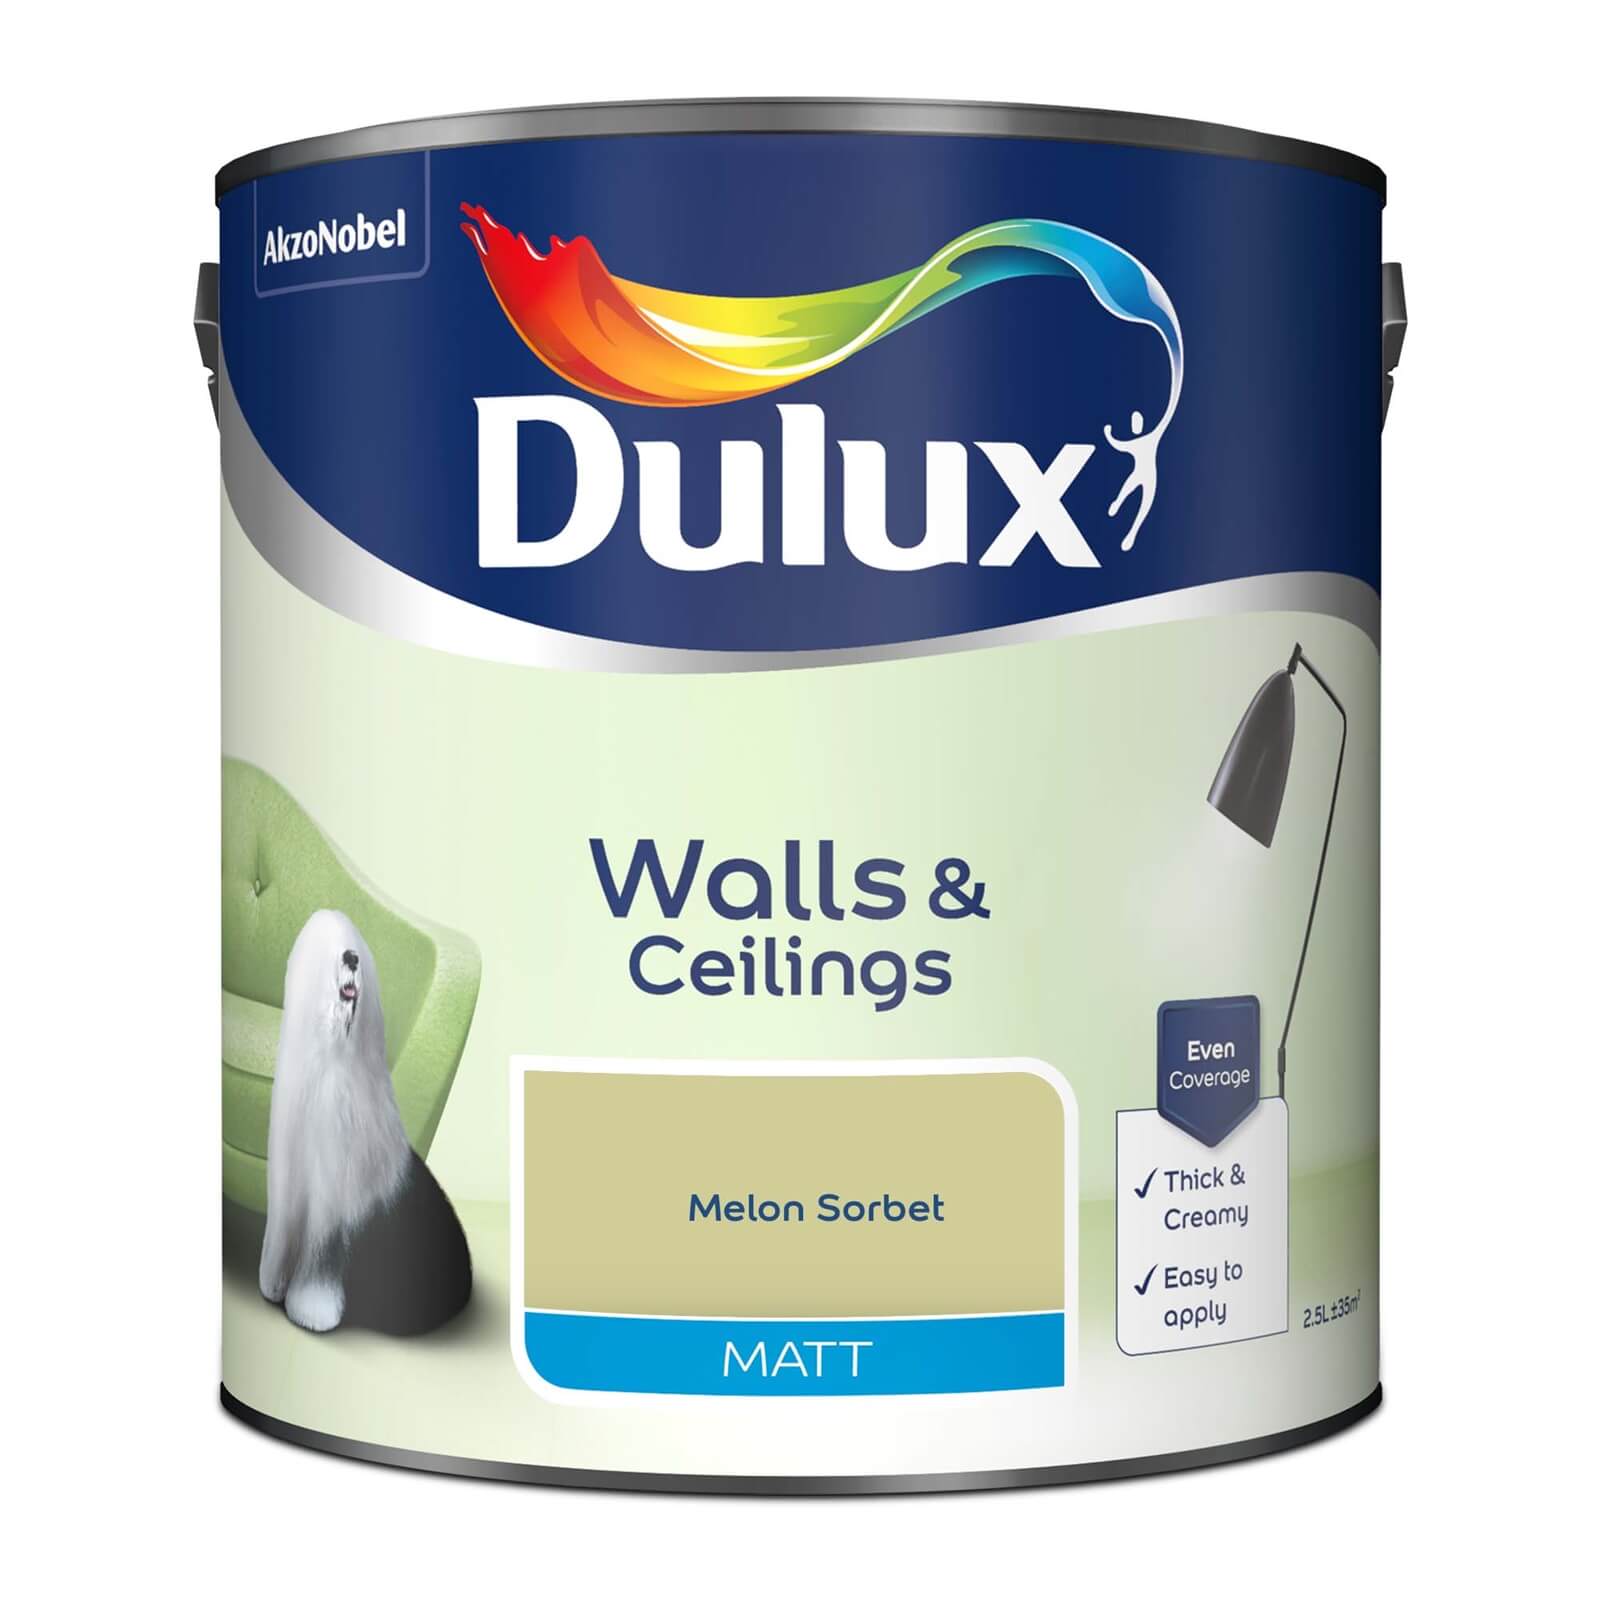 Dulux Matt Emulsion Paint Melon Sorbet - 2.5L